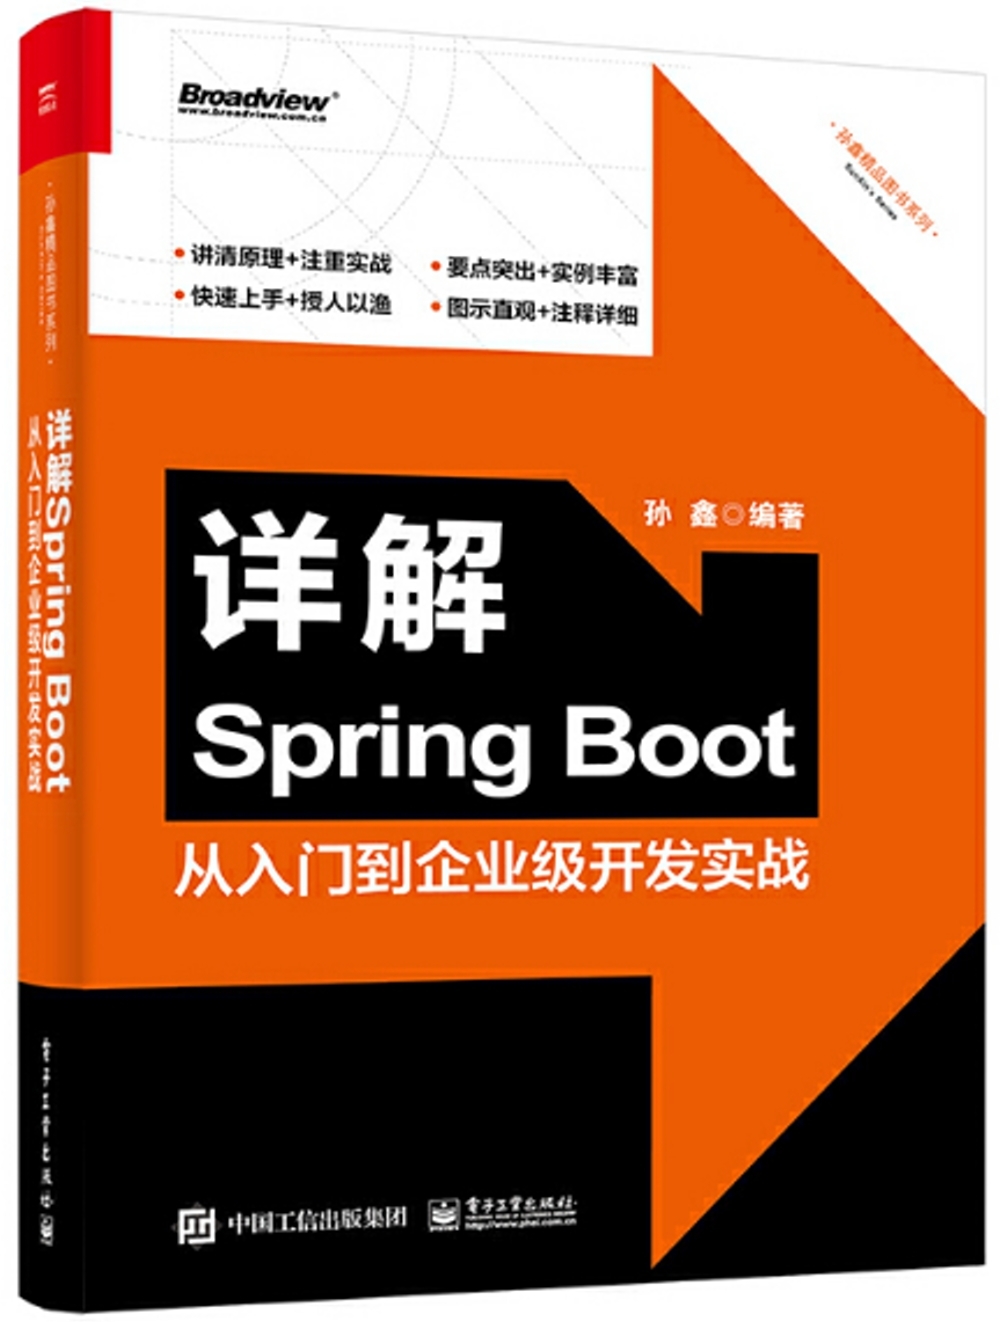 詳解Spring Boot：從入門到企業級開發實戰